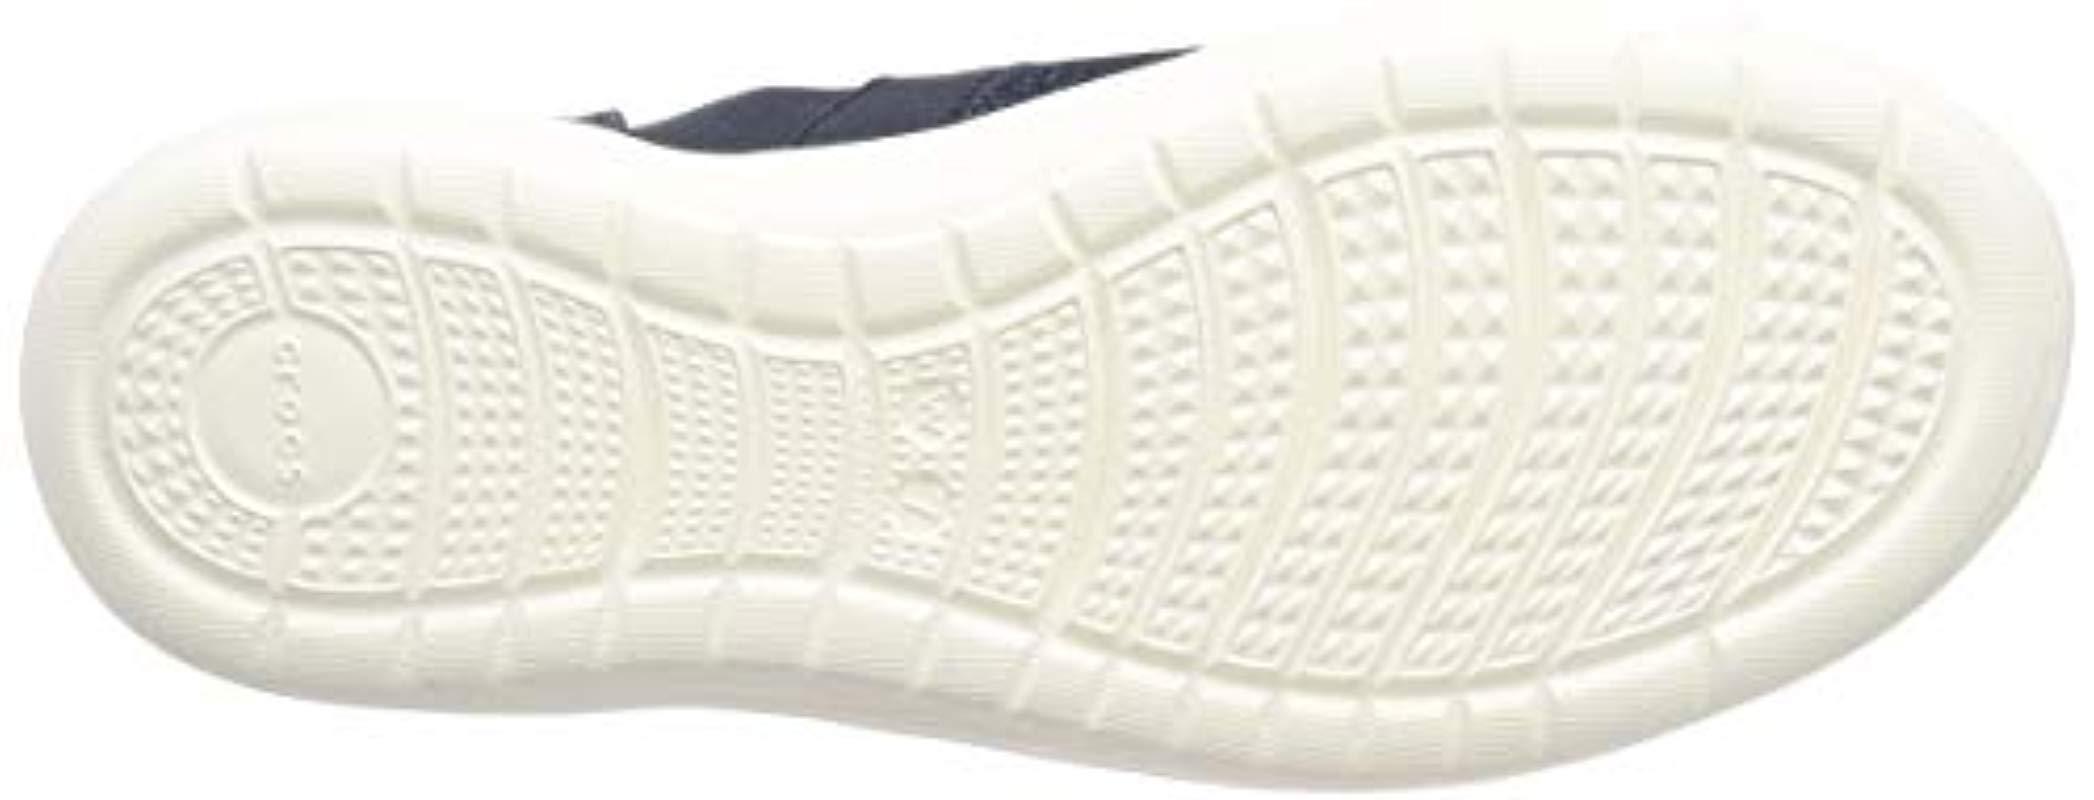 Crocs™ Reviva Slip On Sneakers in Navy/White (Blue) | Lyst